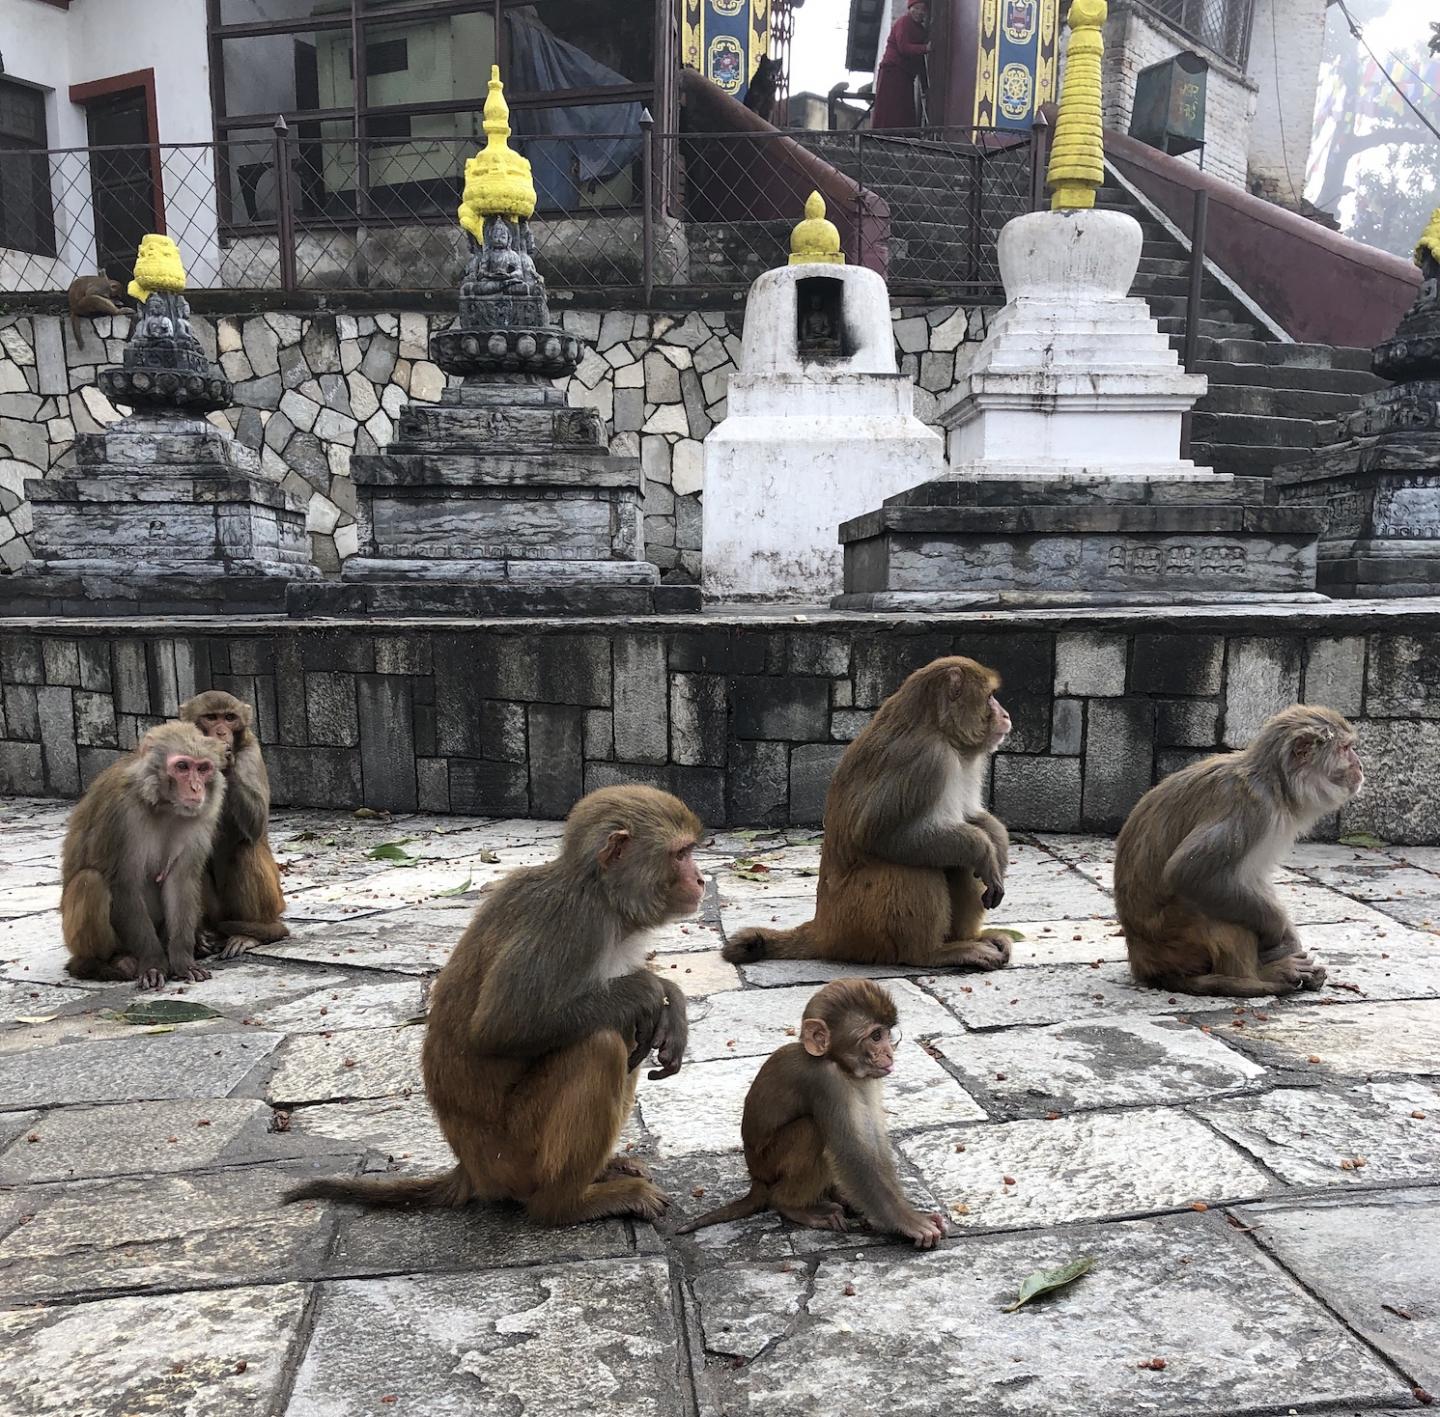 Rhesus macaques in Nepal